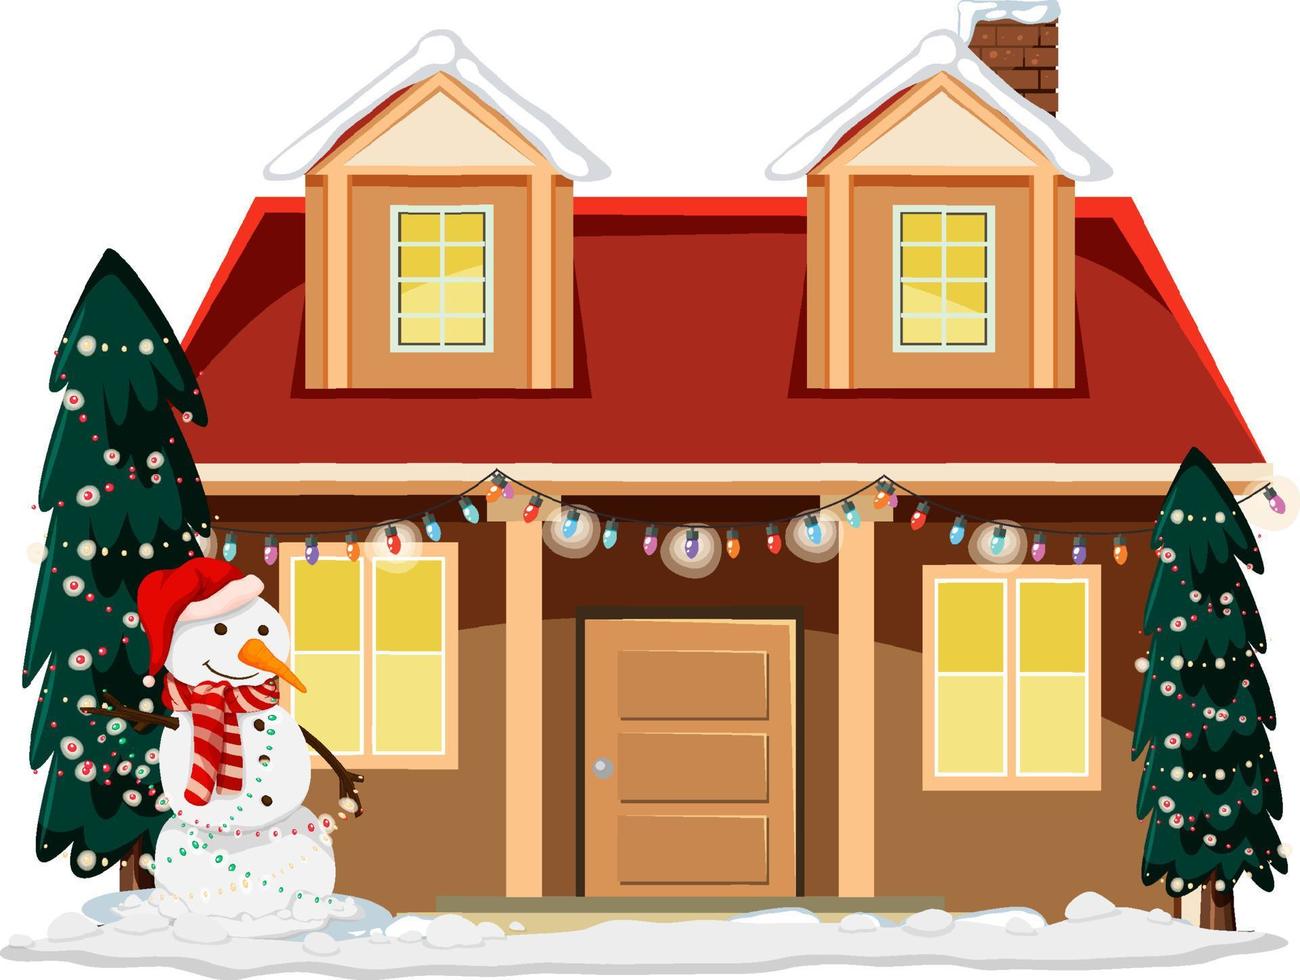 casa cubierta de nieve con un muñeco de nieve y árboles decorados con navidad vector